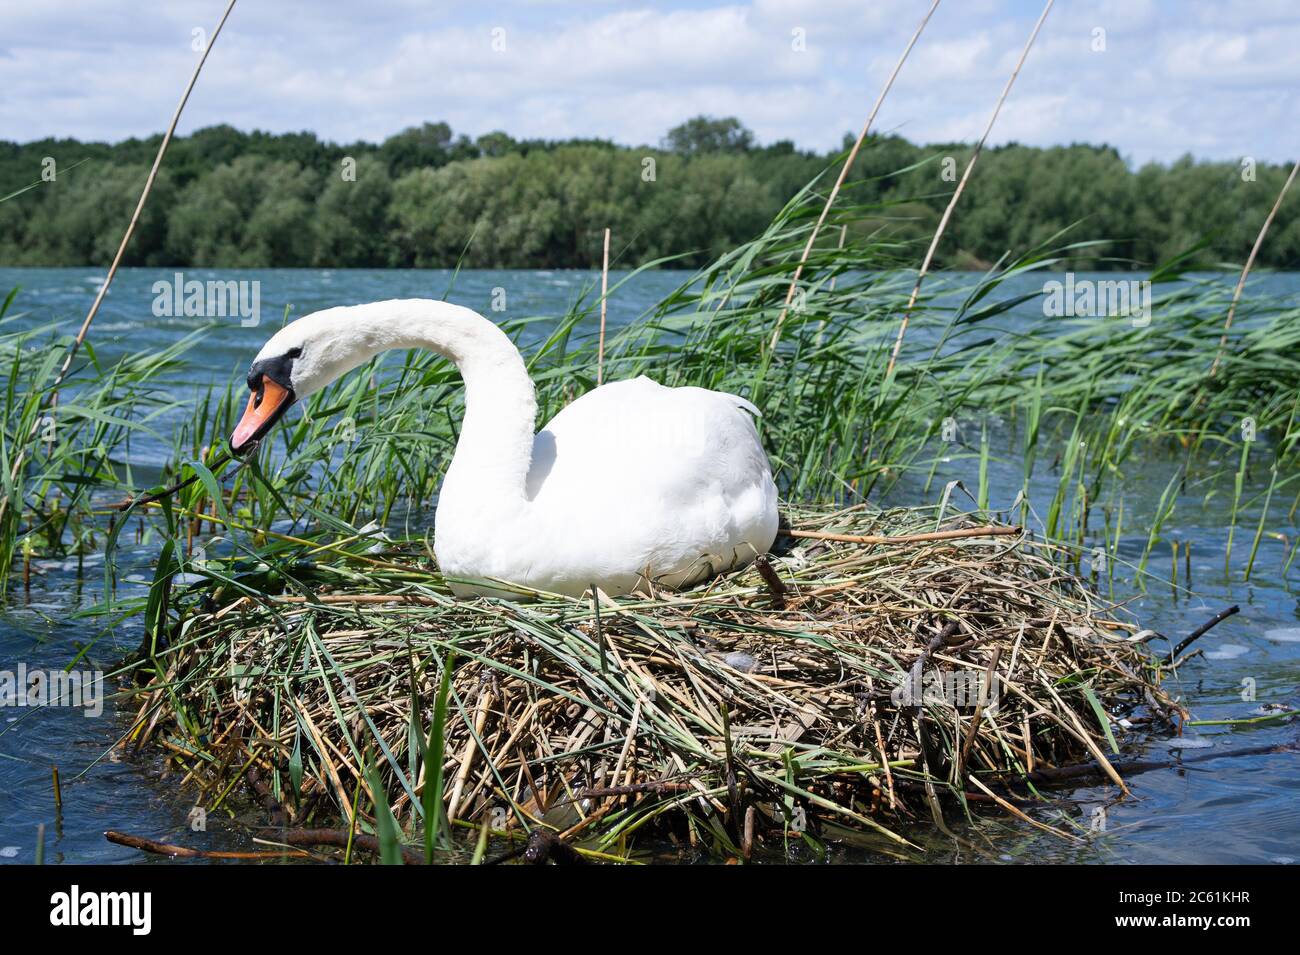 Femelle Mute Swan, Cygnus olor, sur nid à roseaux incubant des œufs réparant le nid, Brant Reservoir, Londres, Royaume-Uni Banque D'Images